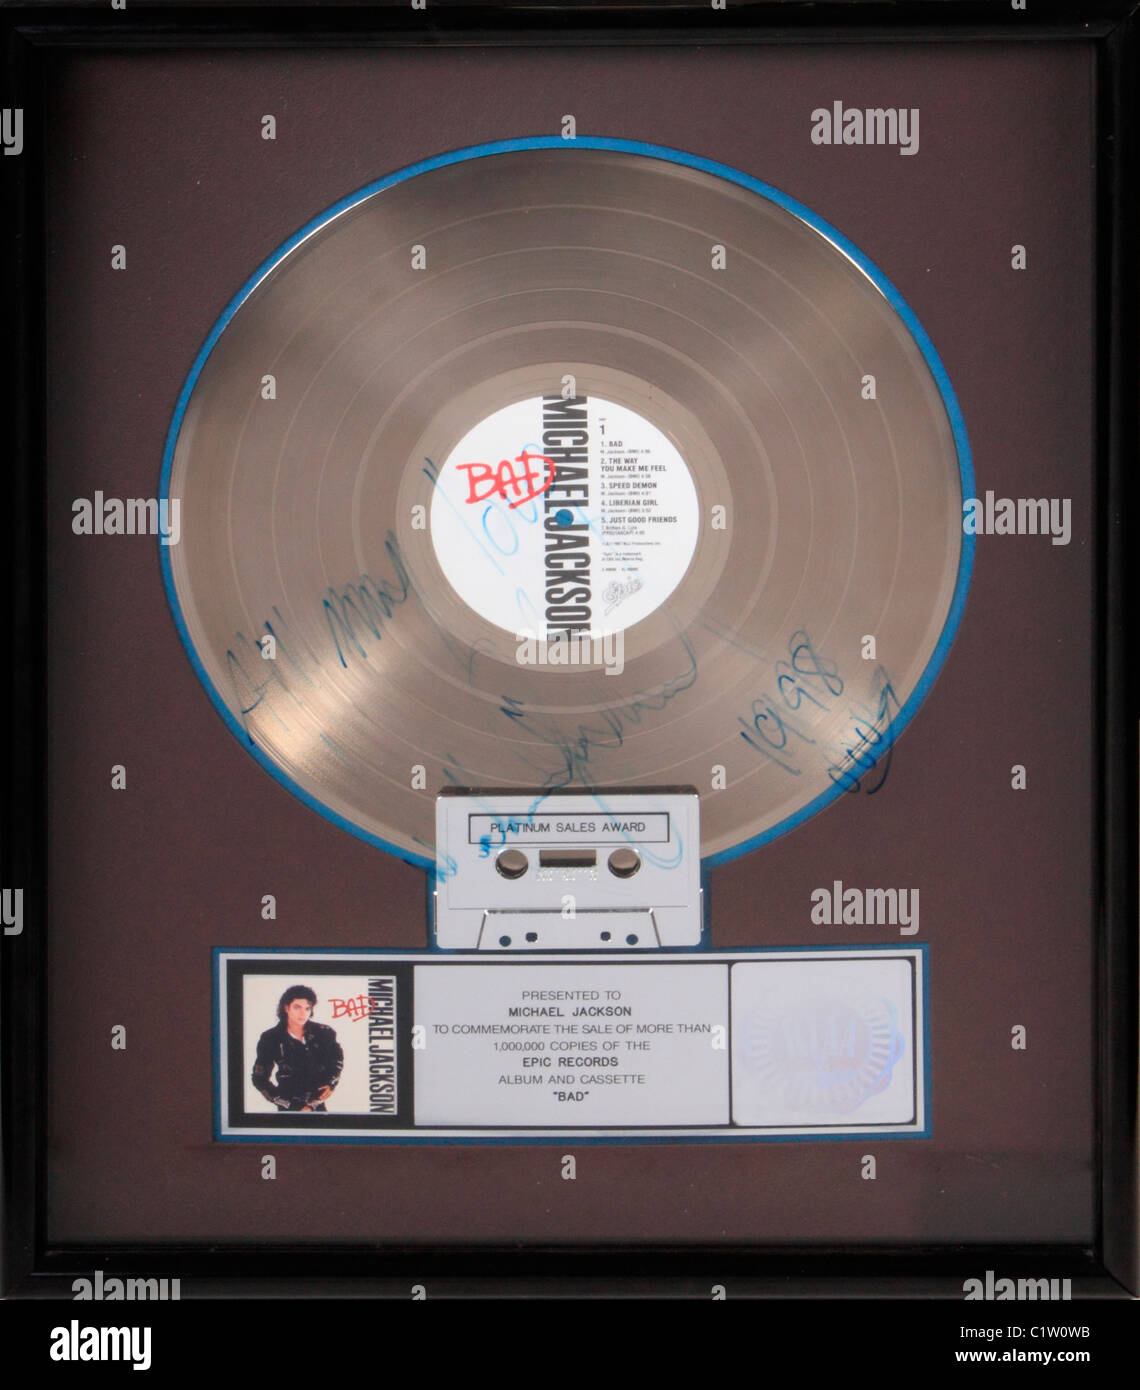 Un RIAA record platinum award presentato a Michael Jackson per commemorare la vendita di più di un milione di copie del poema epico Foto Stock